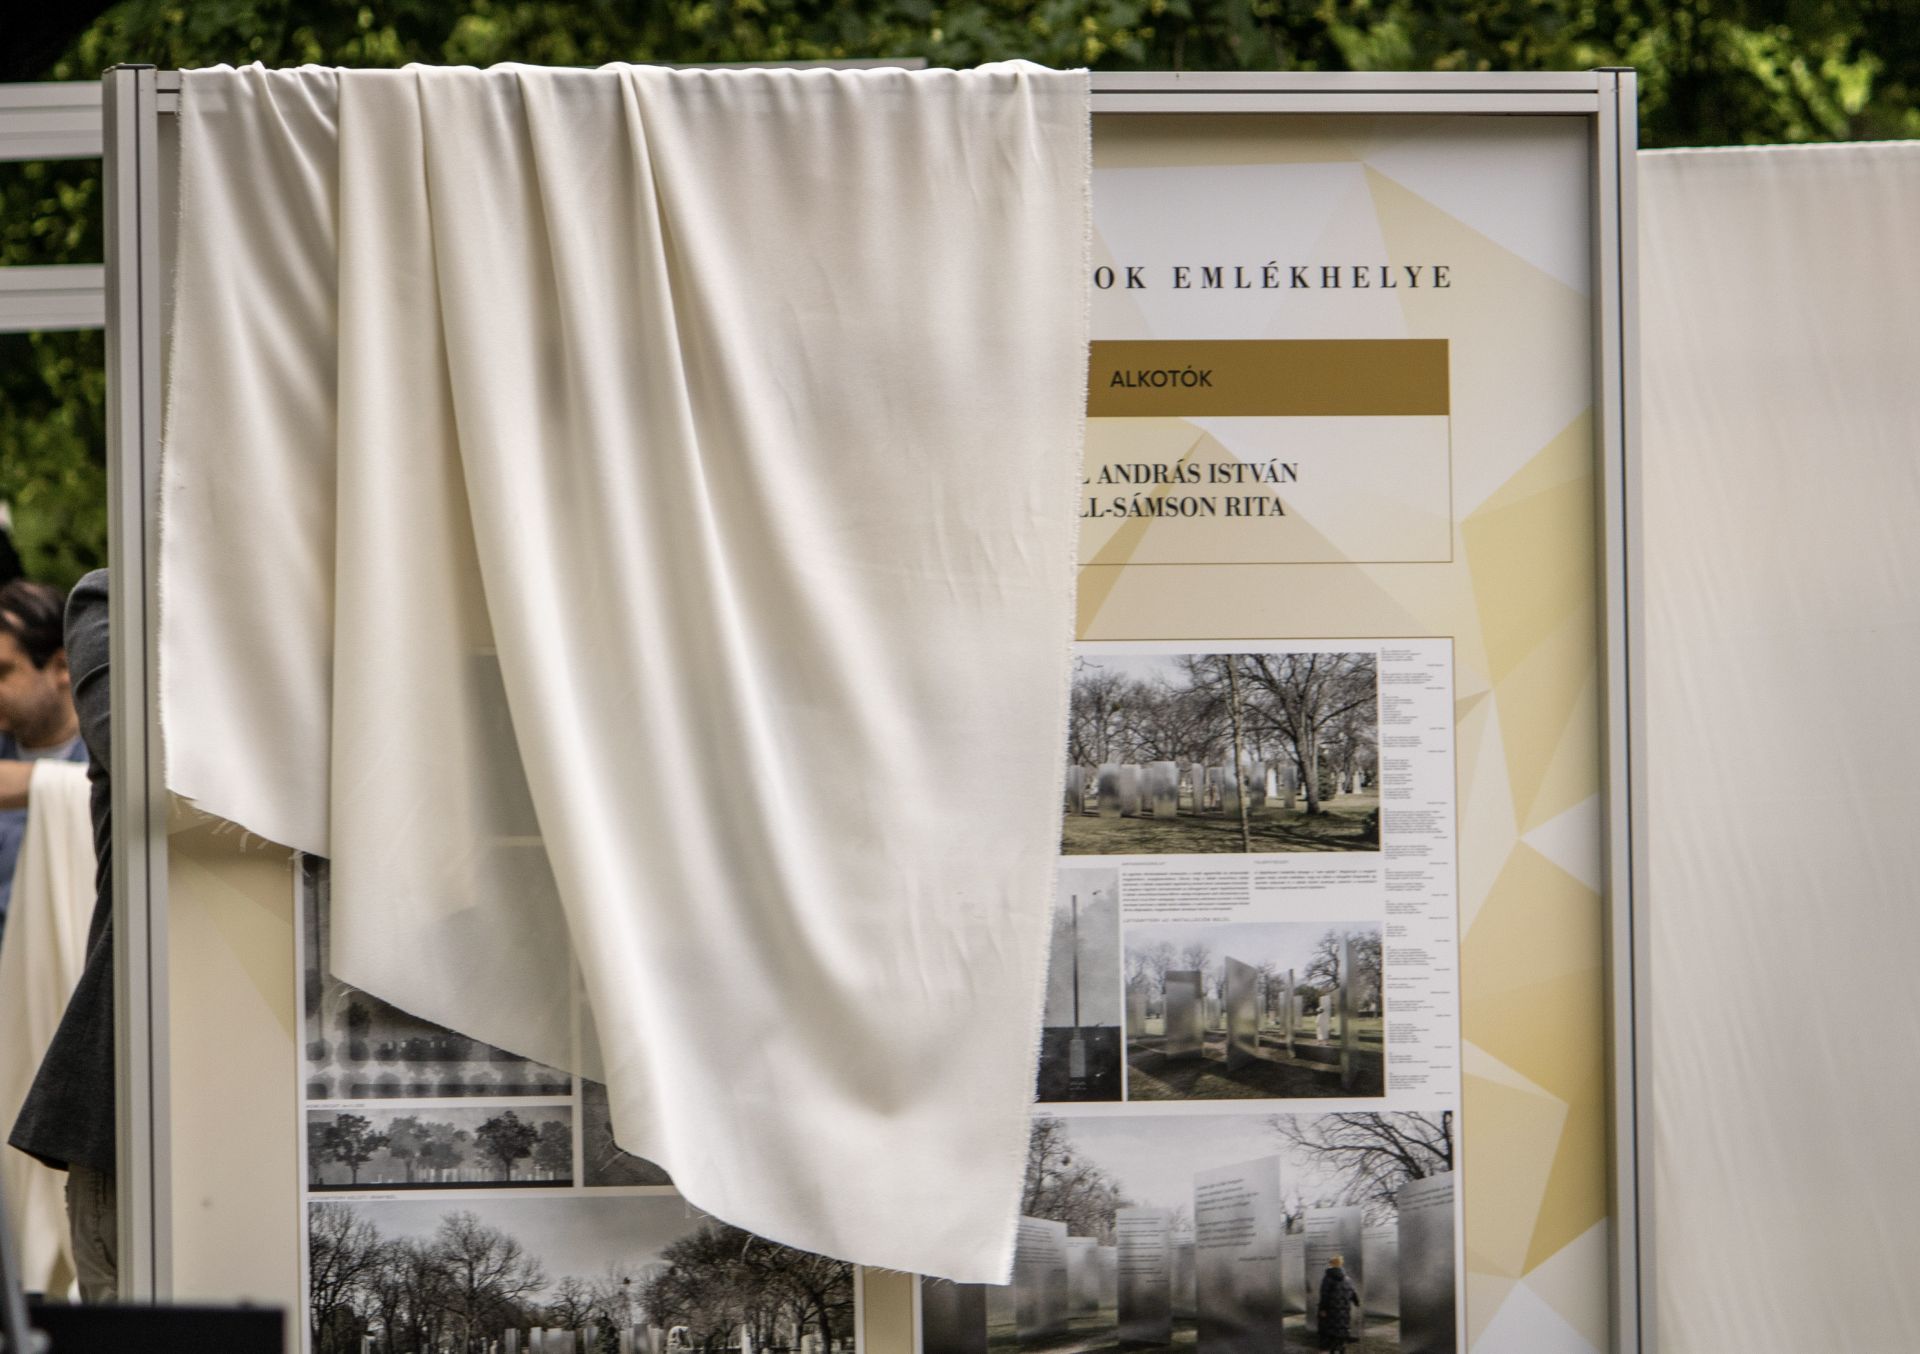 Kiállításon mutatjuk be a határainkon túl nyugvó magyarok emlékhelyére kiírt tervpályázat alkotásait